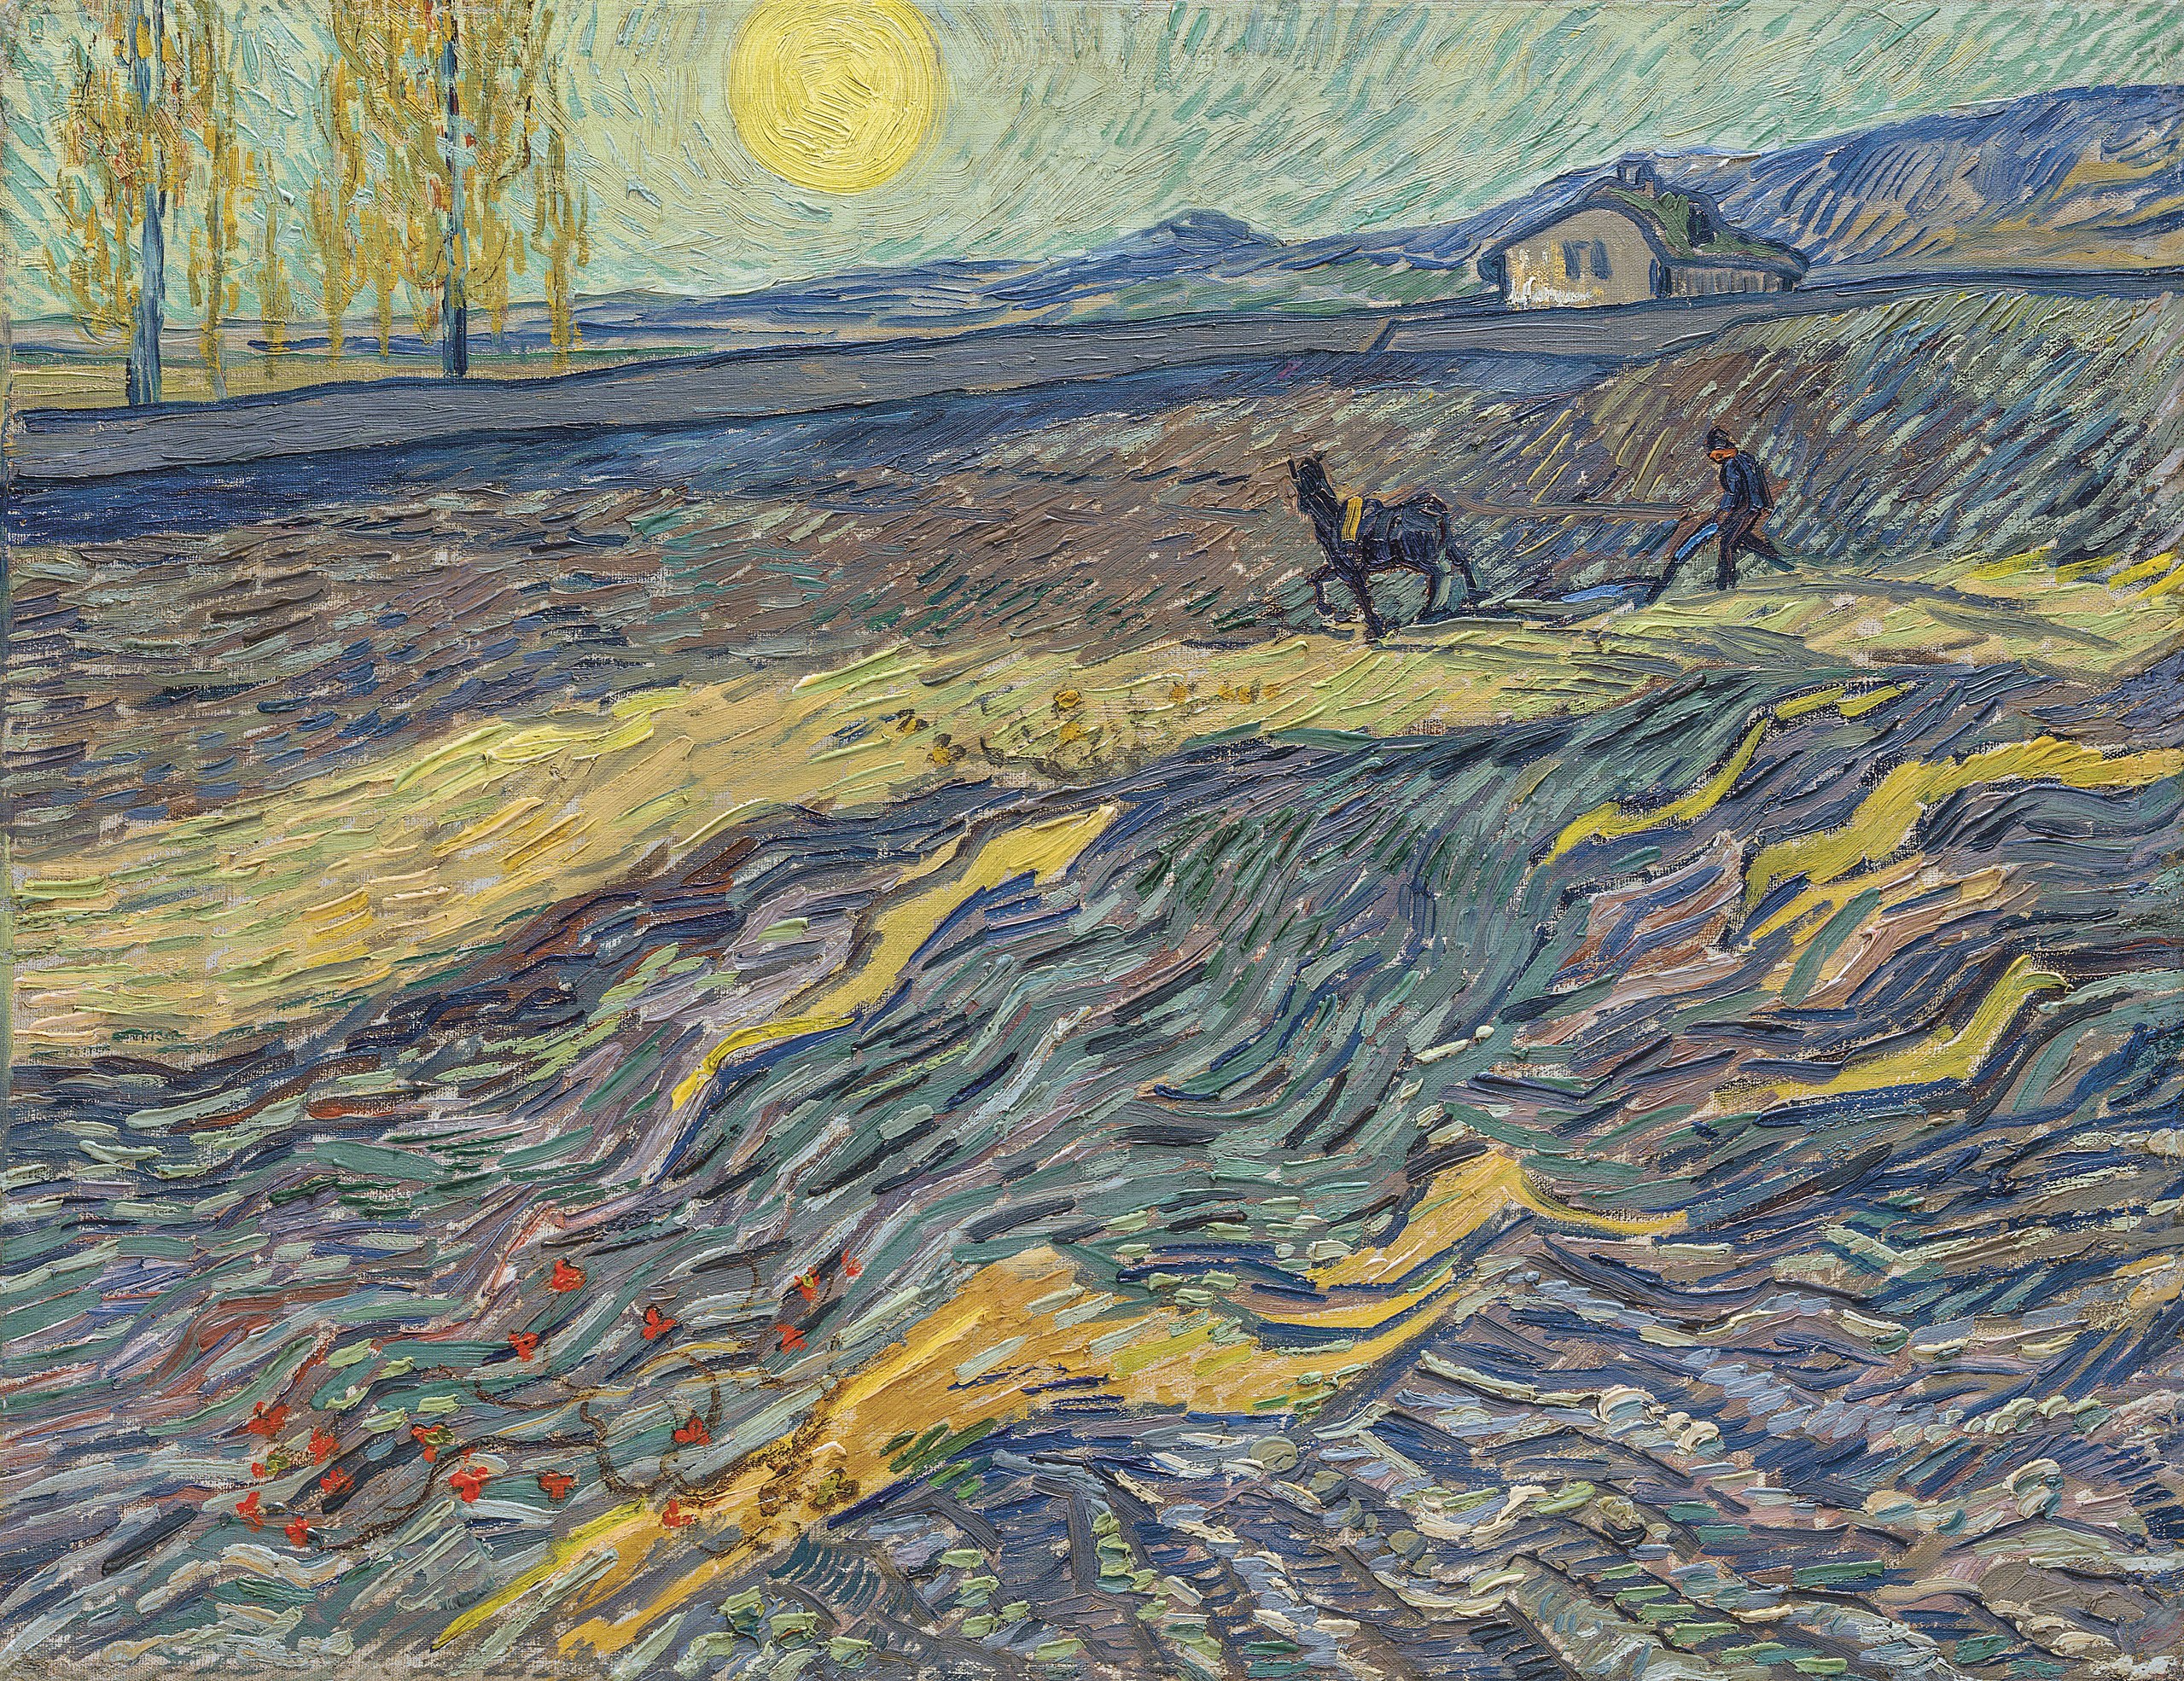 Trabajador en el campo by Vincent van Gogh - 1889 - 50,3 x 64,9 cm Colección privada